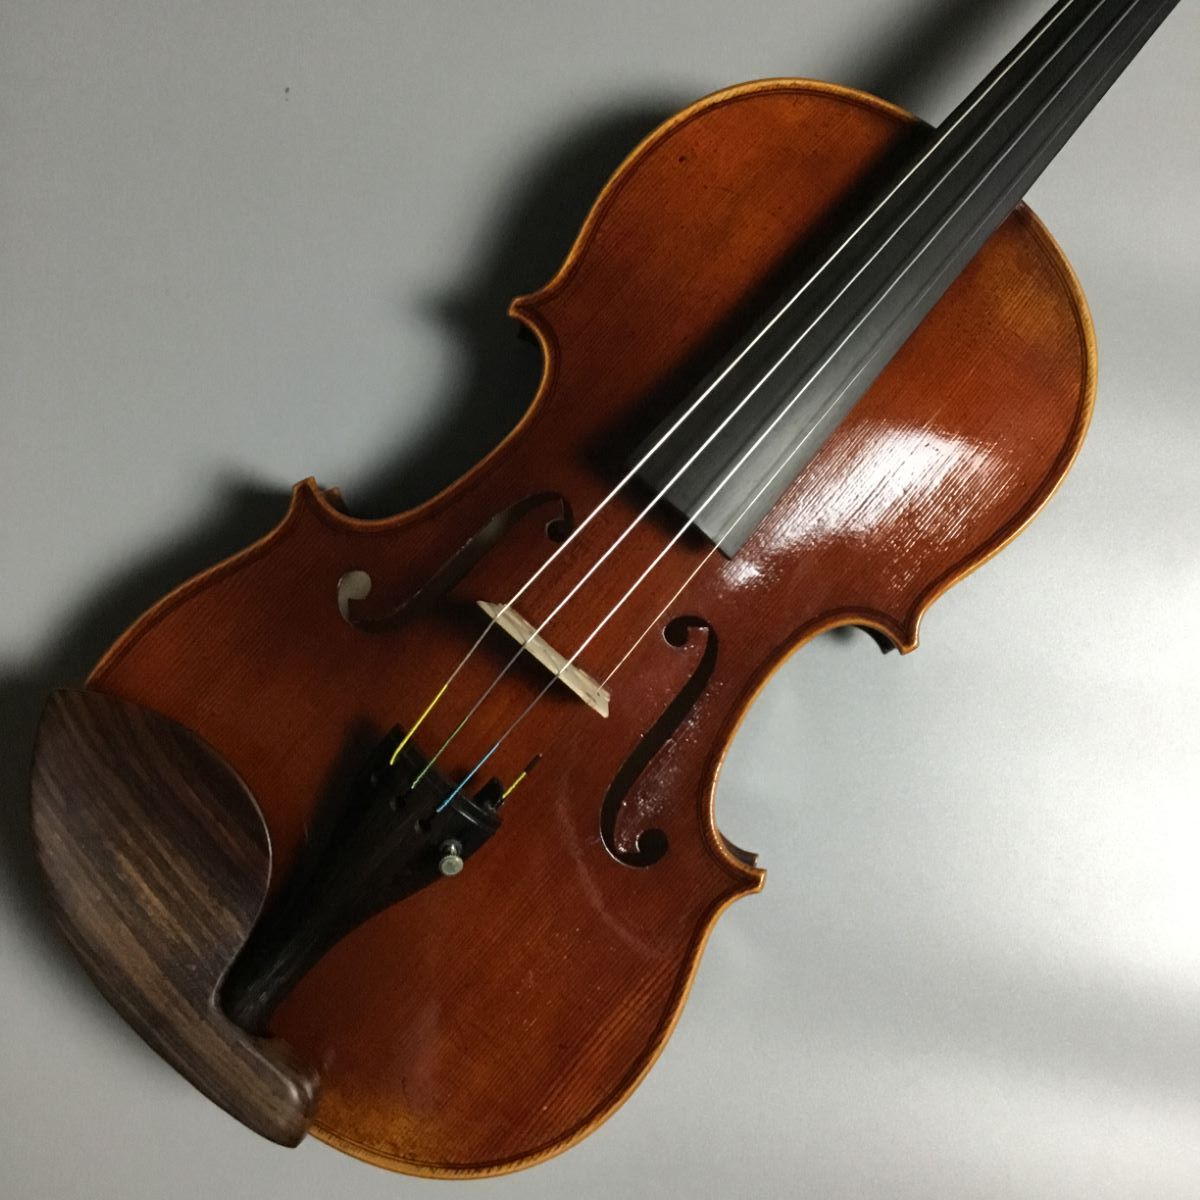 ヤコブ フィッシャー バイオリンJakob Fischer violin - 楽器/器材